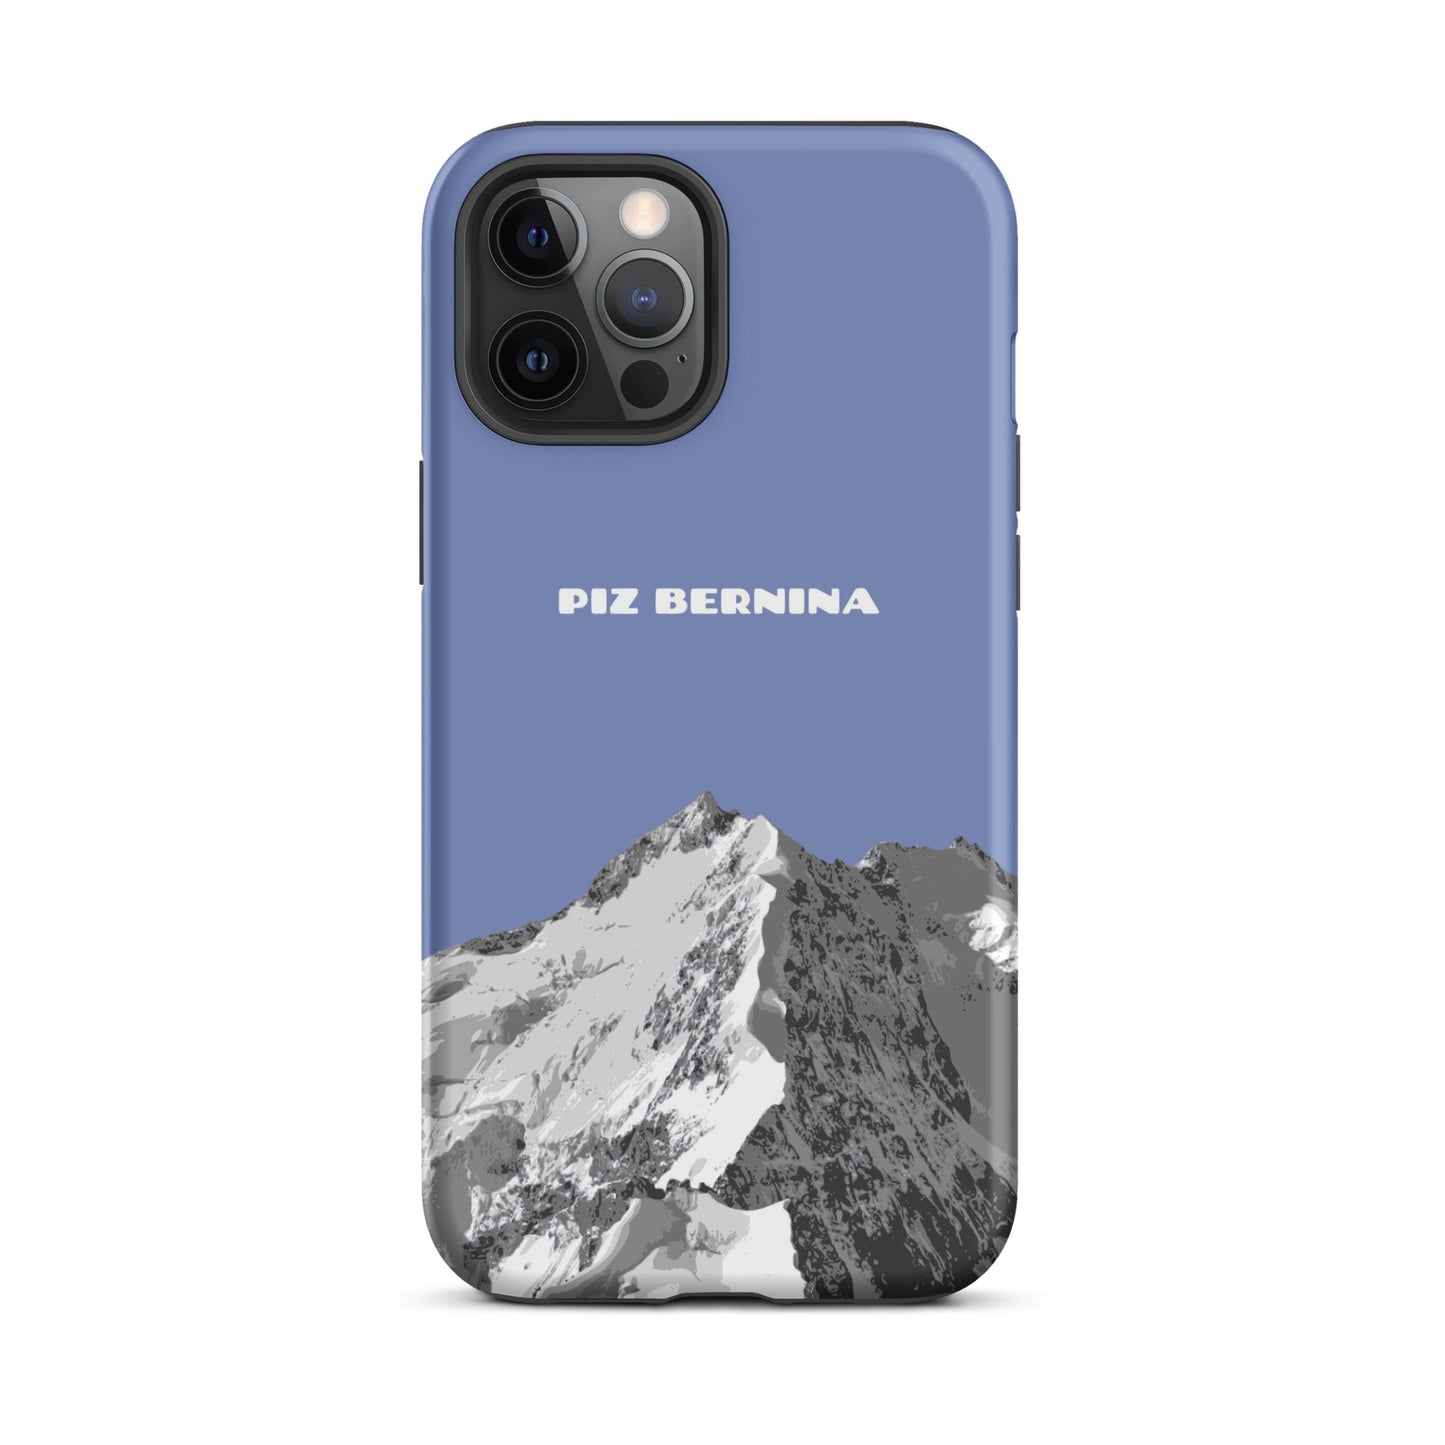 Hülle für das iPhone 12 Pro Max von Apple in der Farbe Pastellblau, dass den Piz Bernina in Graubünden zeigt.